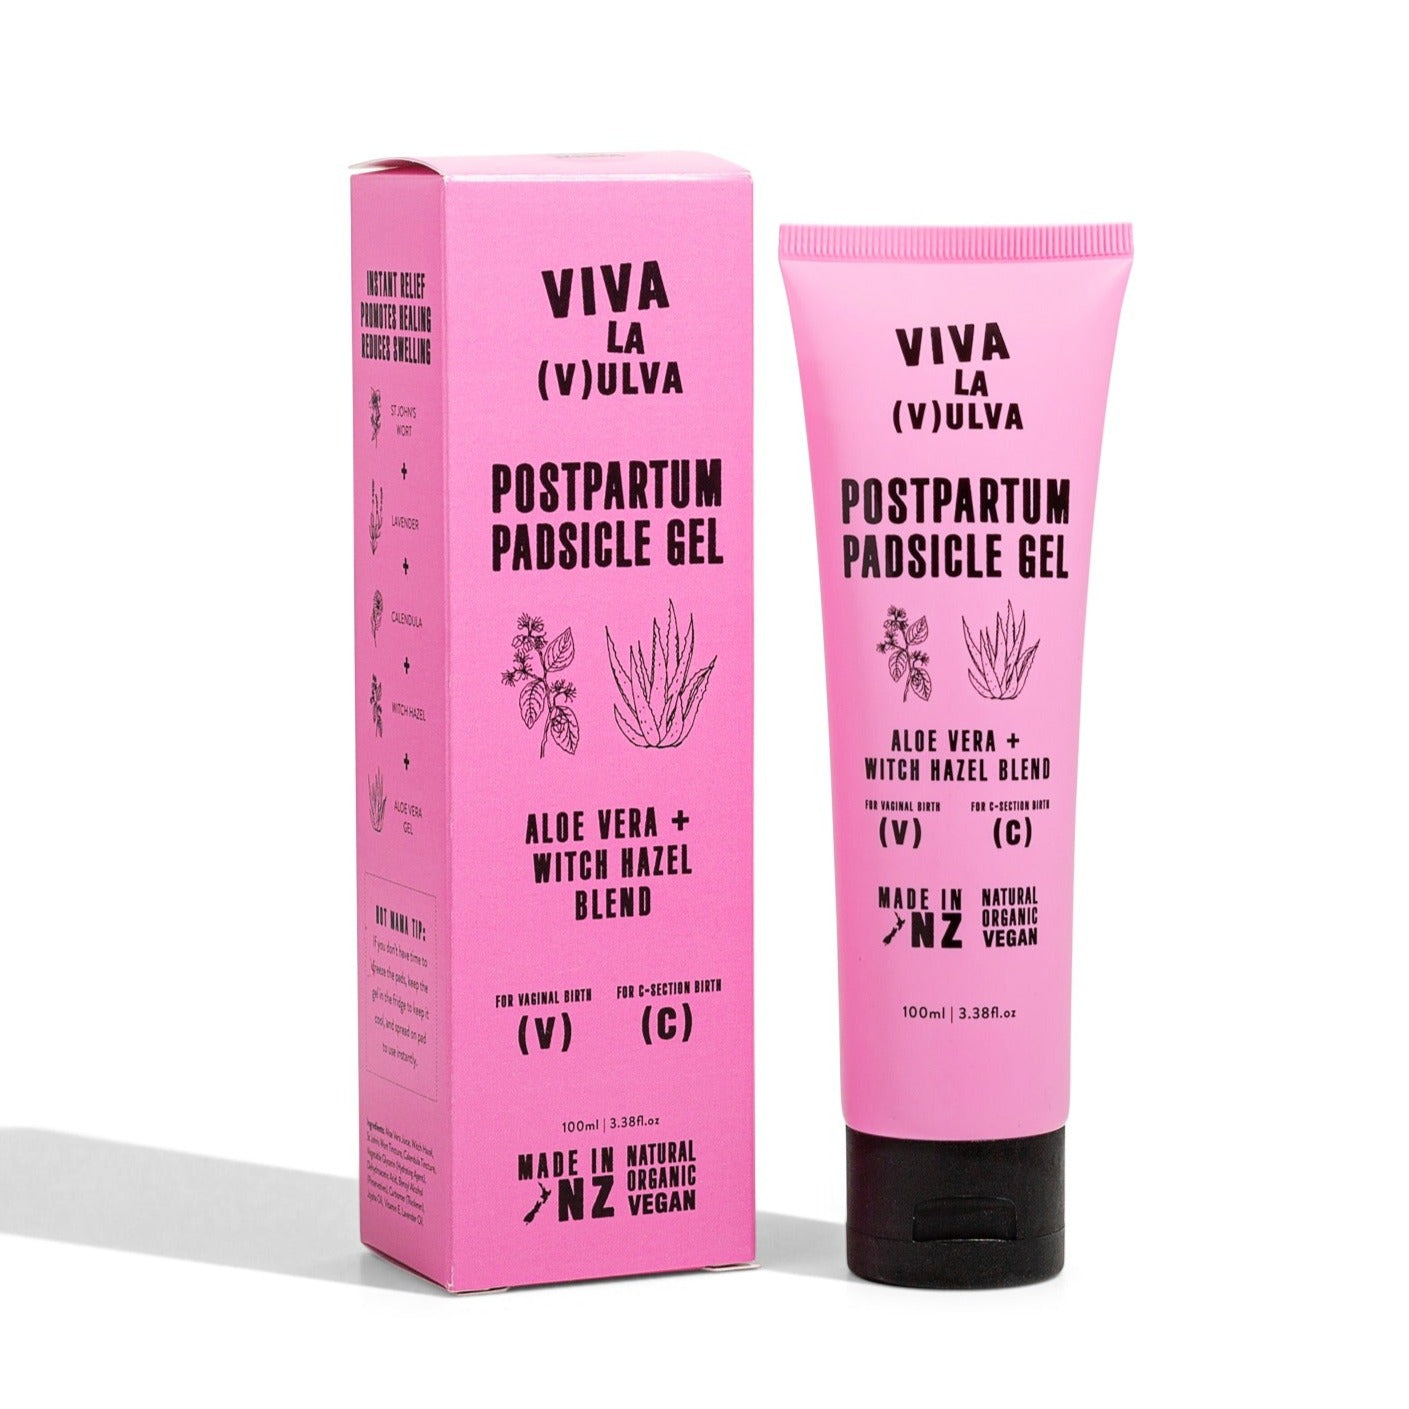 Viva la Vulva Postpartum Padsicle Gel available at Bear & Moo